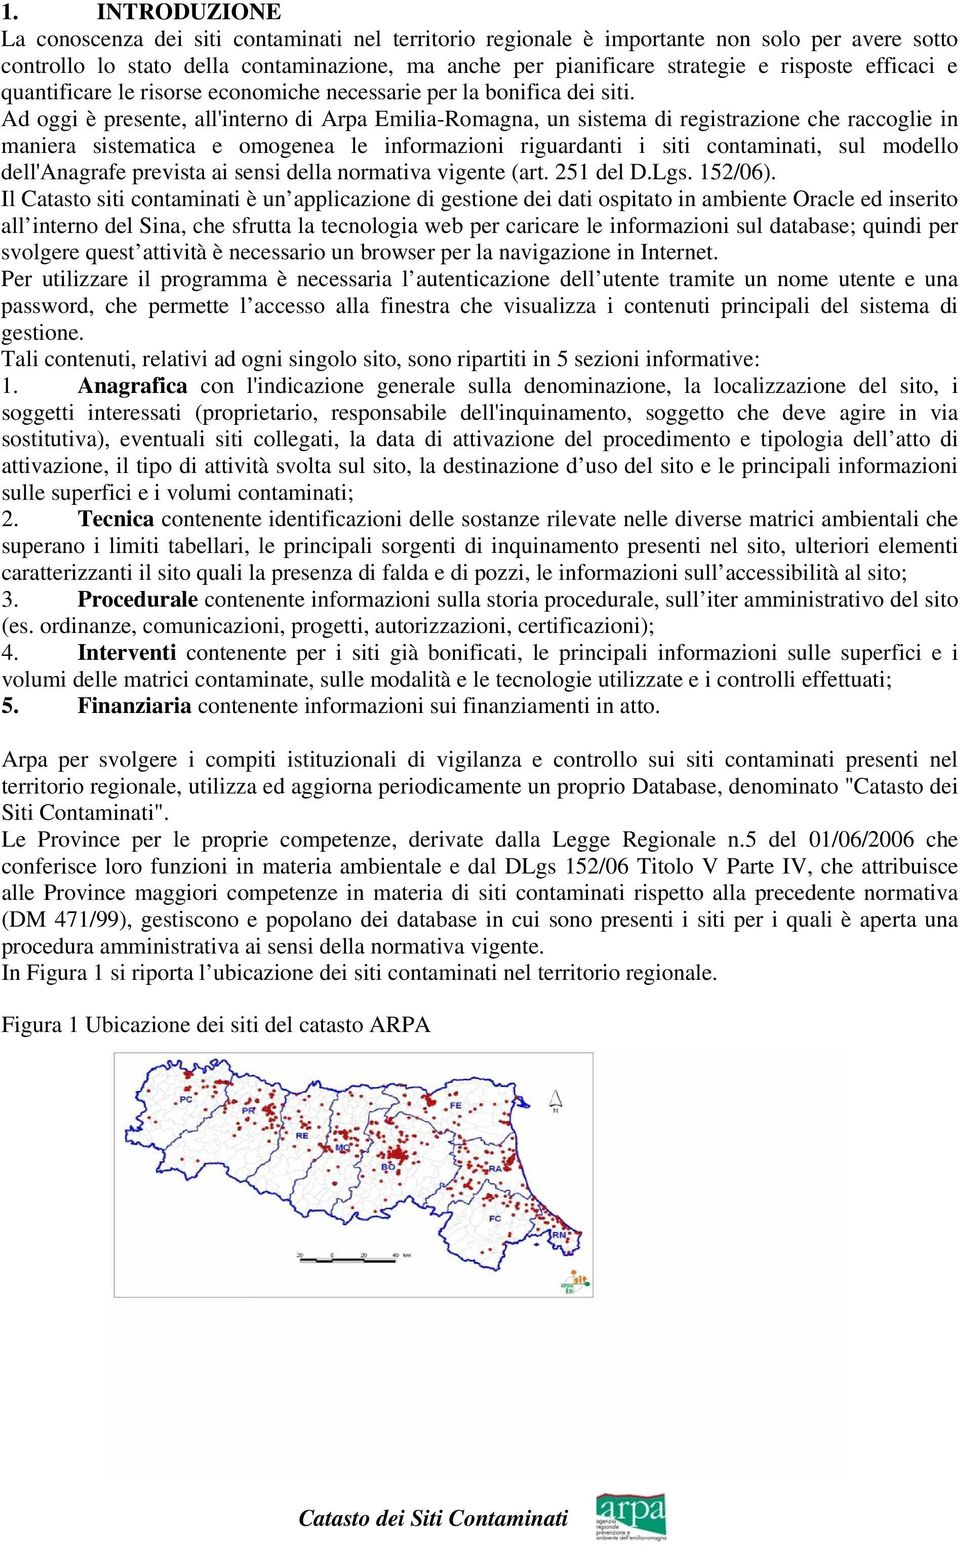 Ad oggi è presente, all'interno di Arpa Emilia-Romagna, un sistema di registrazione che raccoglie in maniera sistematica e omogenea le informazioni riguardanti i siti contaminati, sul modello